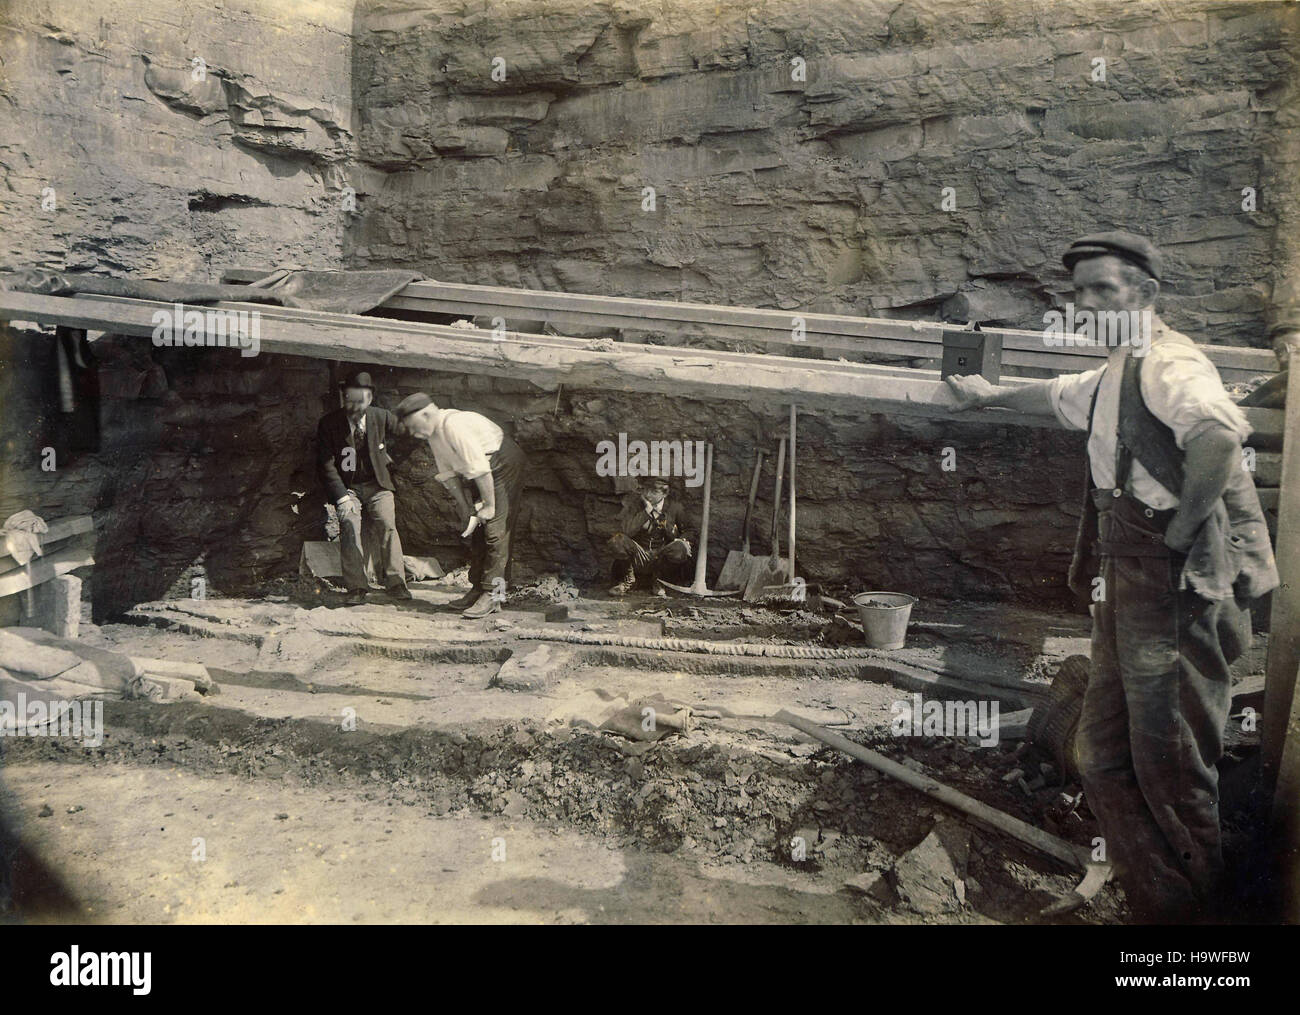 Archivio Storico di immagine dei cacciatori di fossili / archeologi scavo i reperti fossili di un'ichthyosaur a Stockton calce lavora nel Warwickshire 1898. Foto Stock